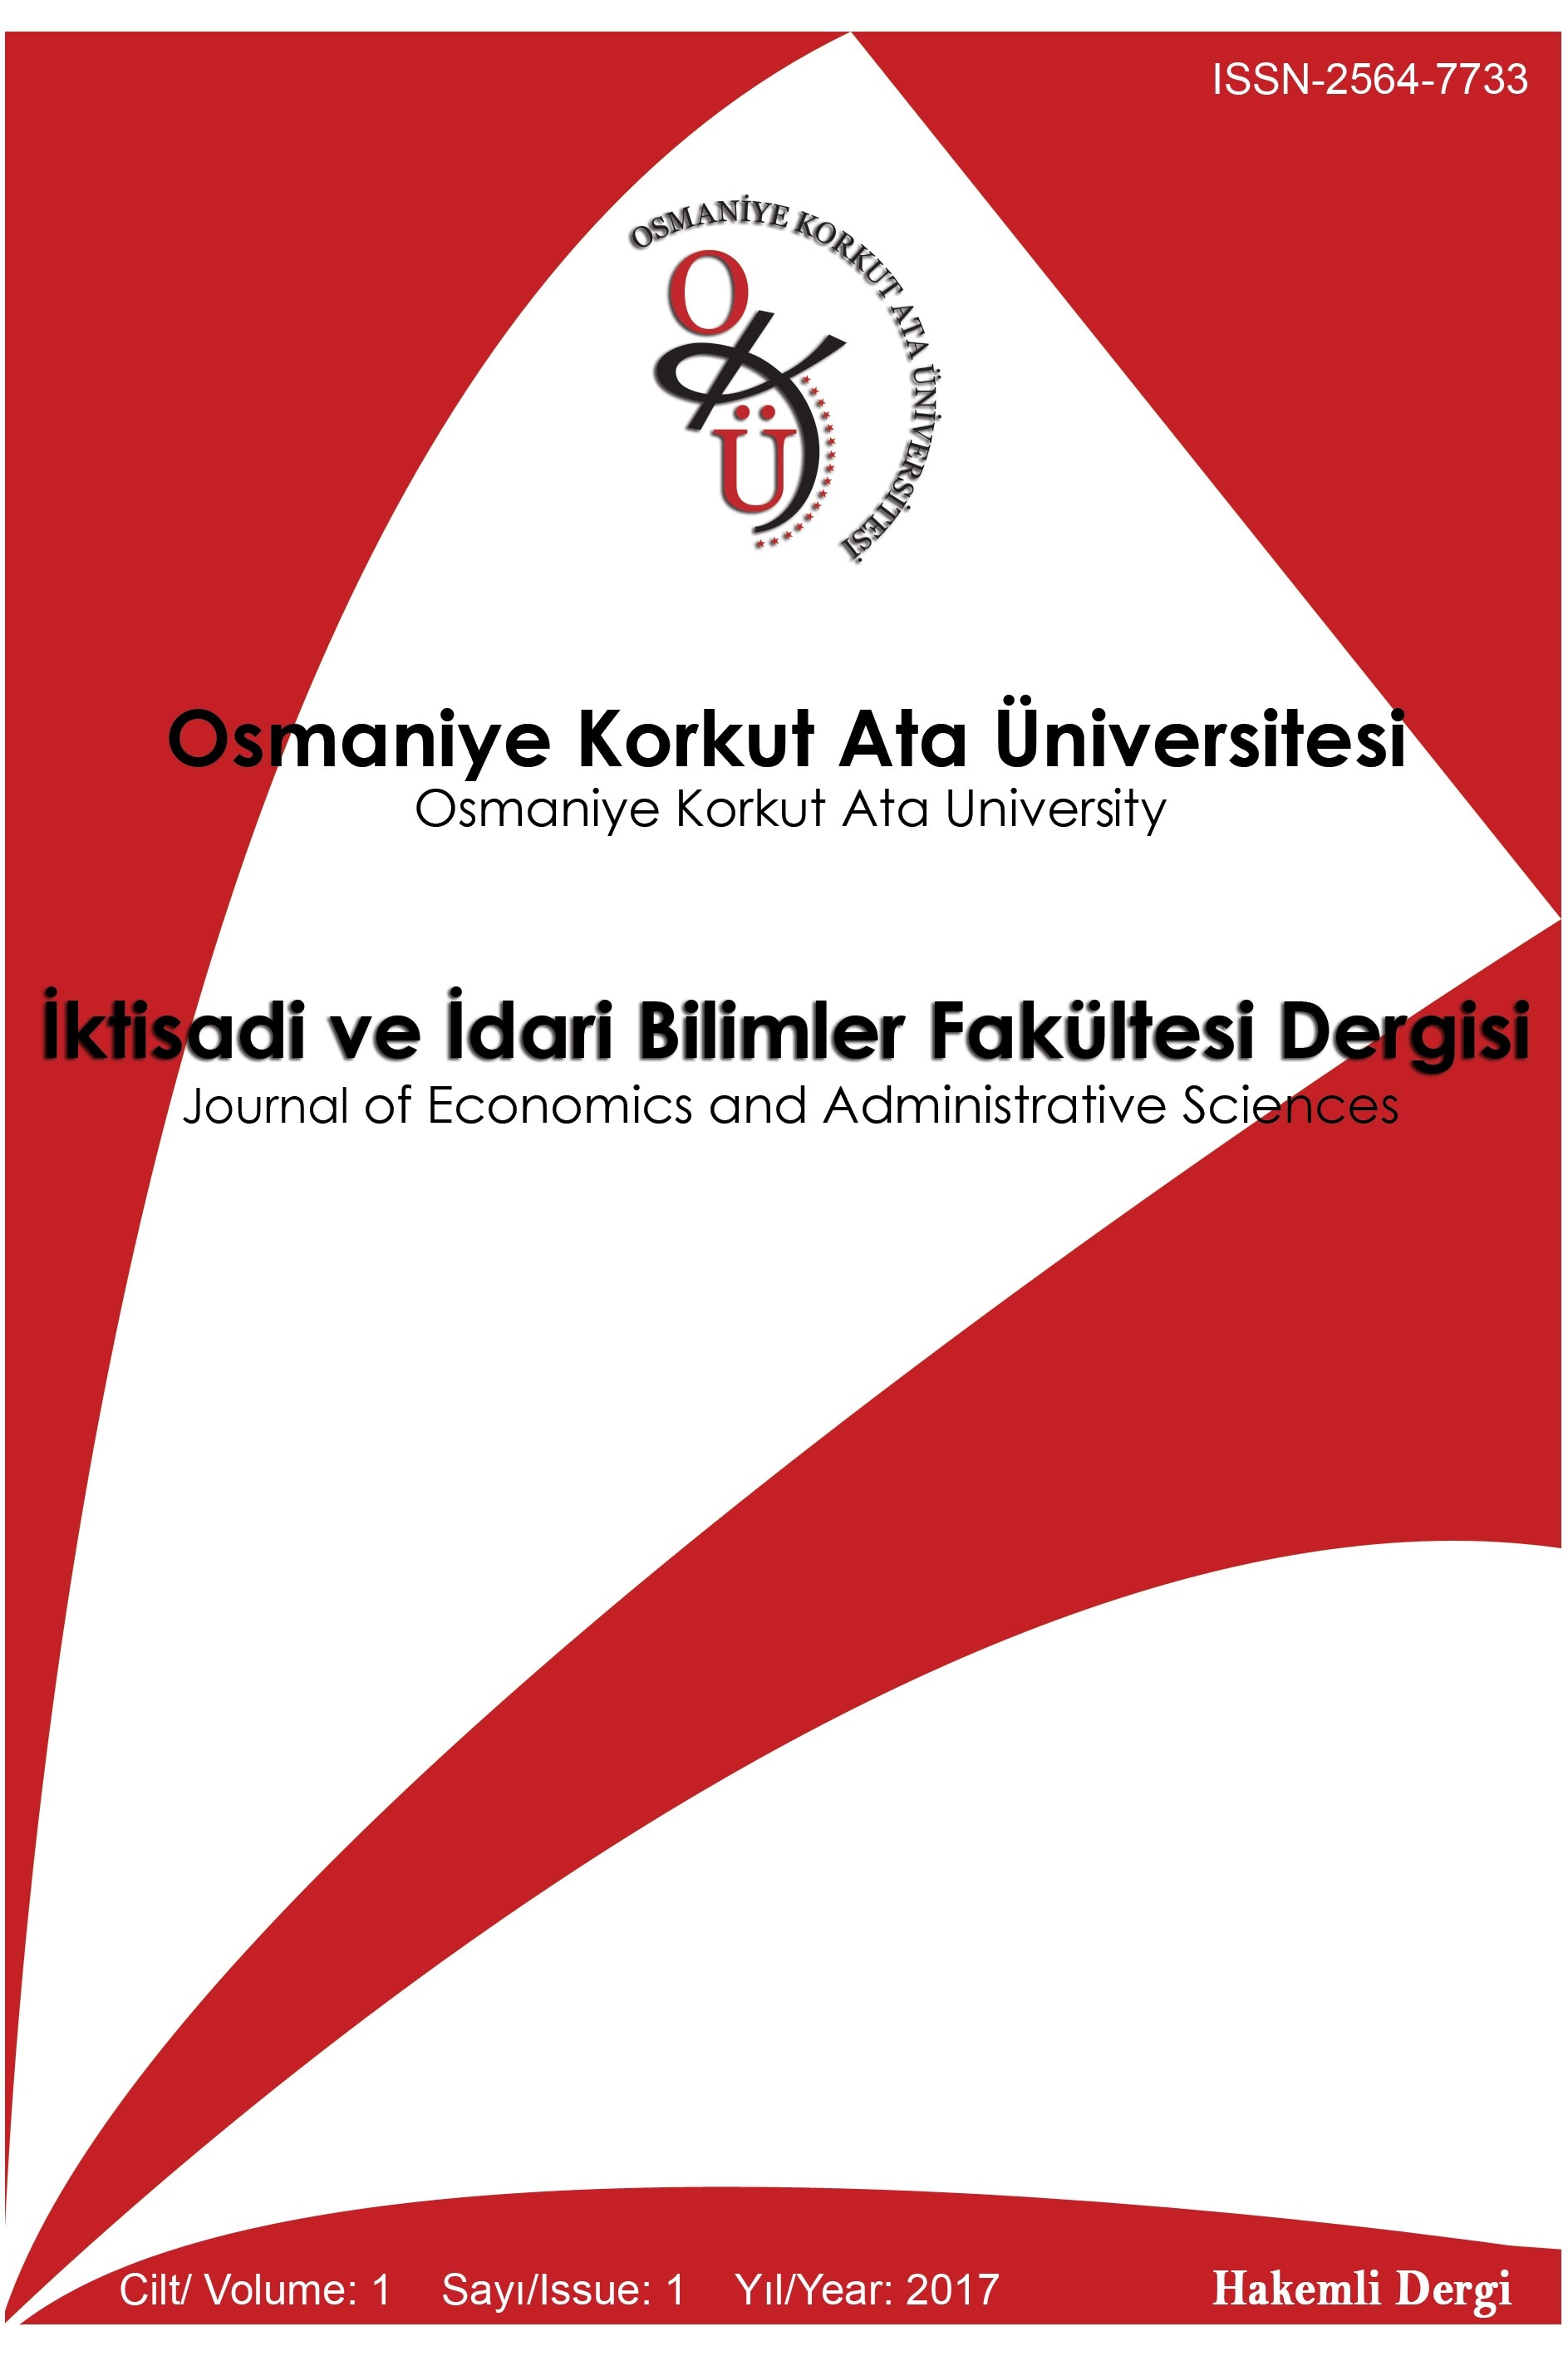 Osmaniye Korkut Ata Üniversitesi İktisadi ve İdari Bilimler Fakültesi Dergisi